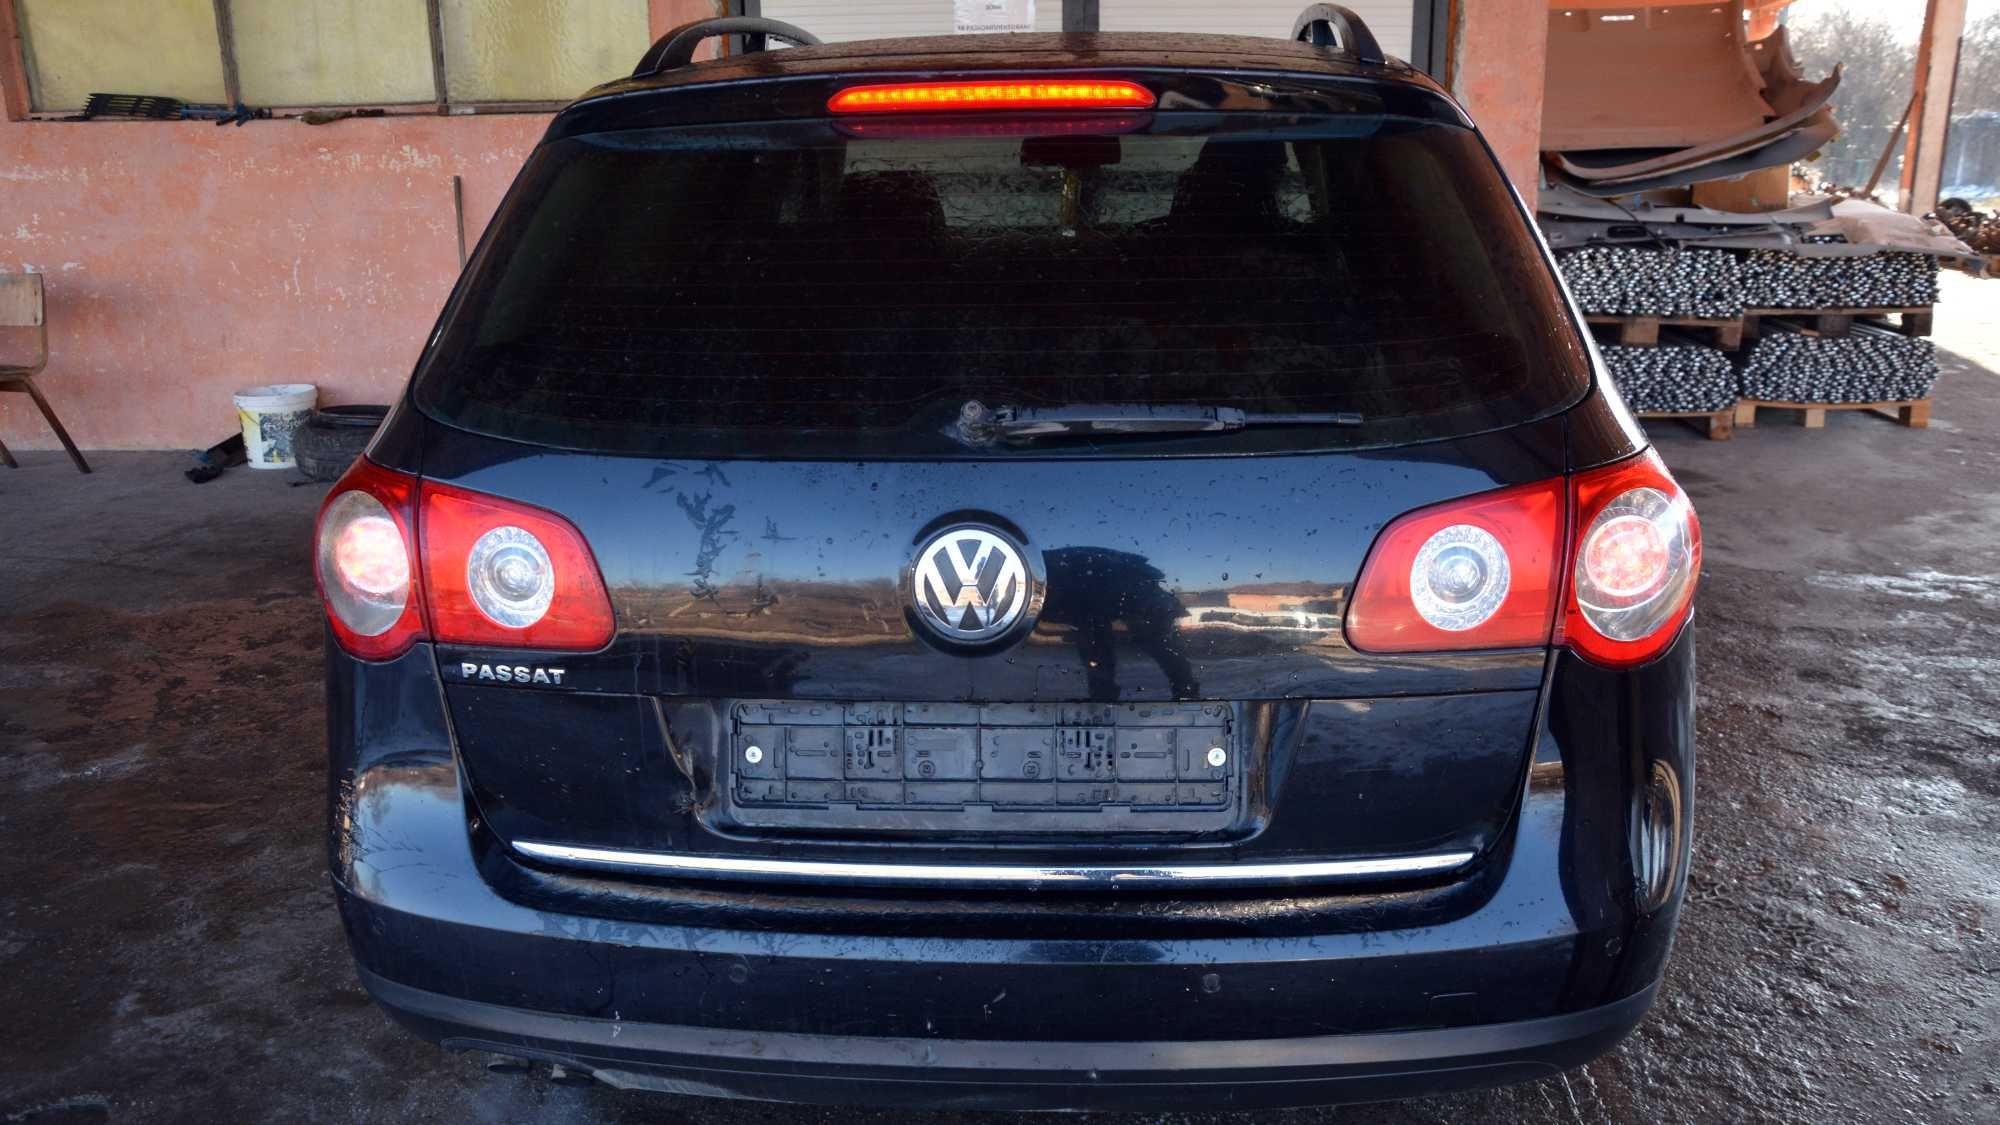 Volkswagen Passat (B6) 2005-2010г на части цени в описанието